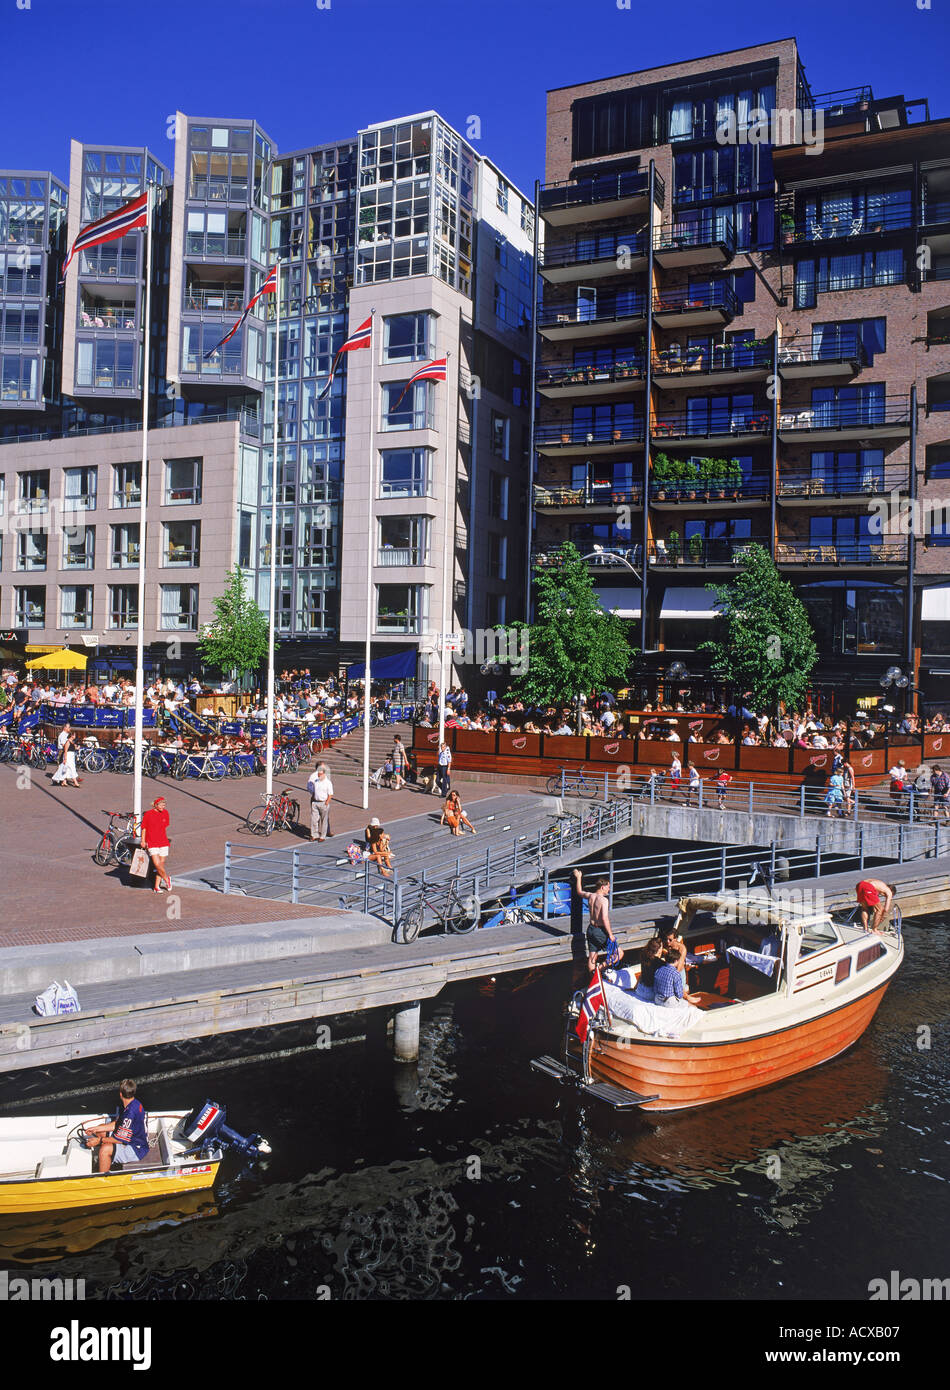 Ristoranti sul mare e canali con il passaggio di imbarcazioni presso Aker Pier in Oslo Foto Stock